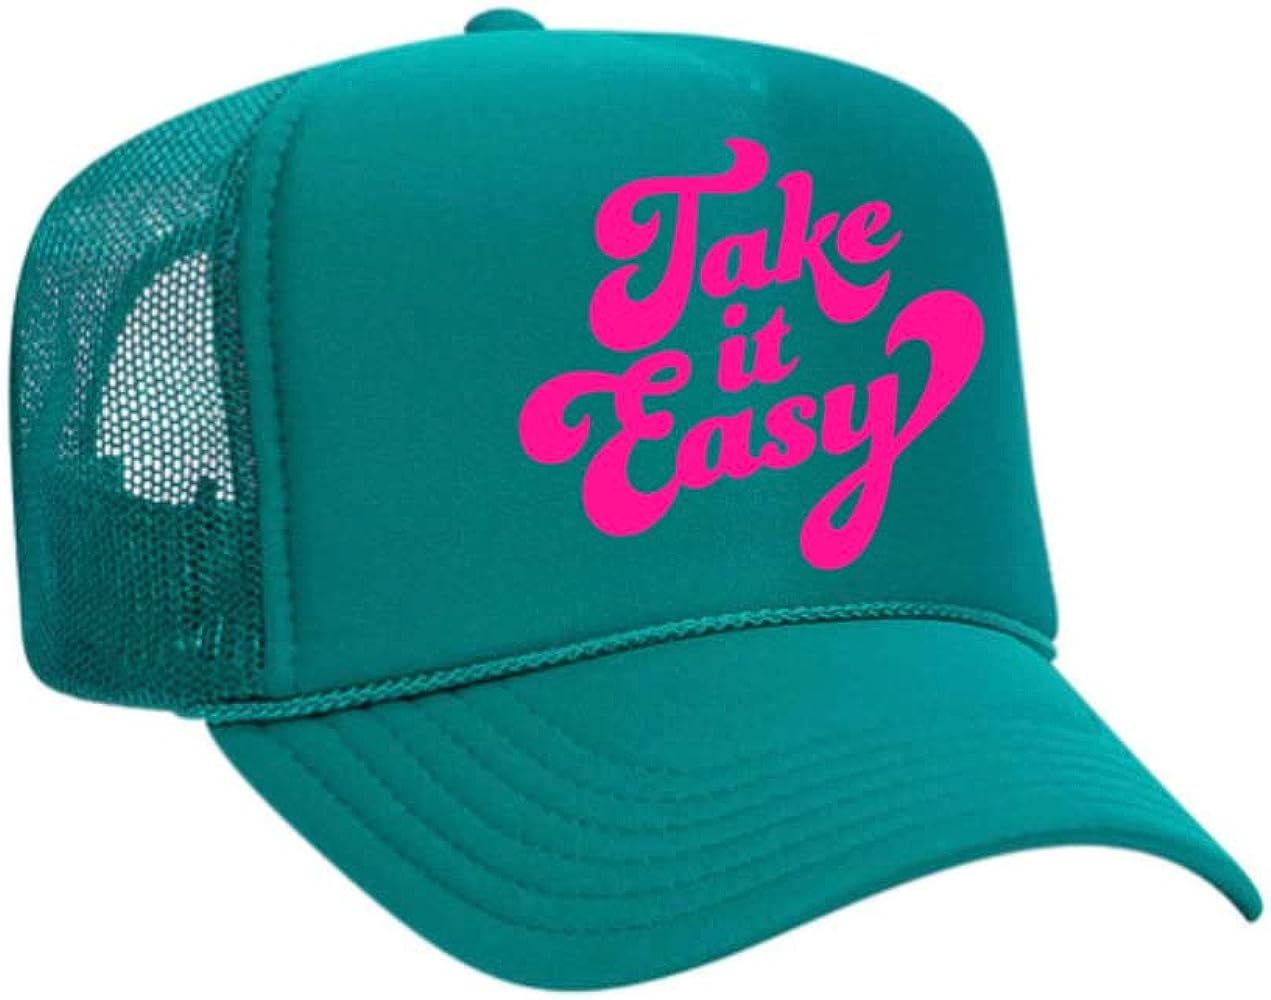 TAKE IT Easy Neon Trucker Hat | Amazon (US)